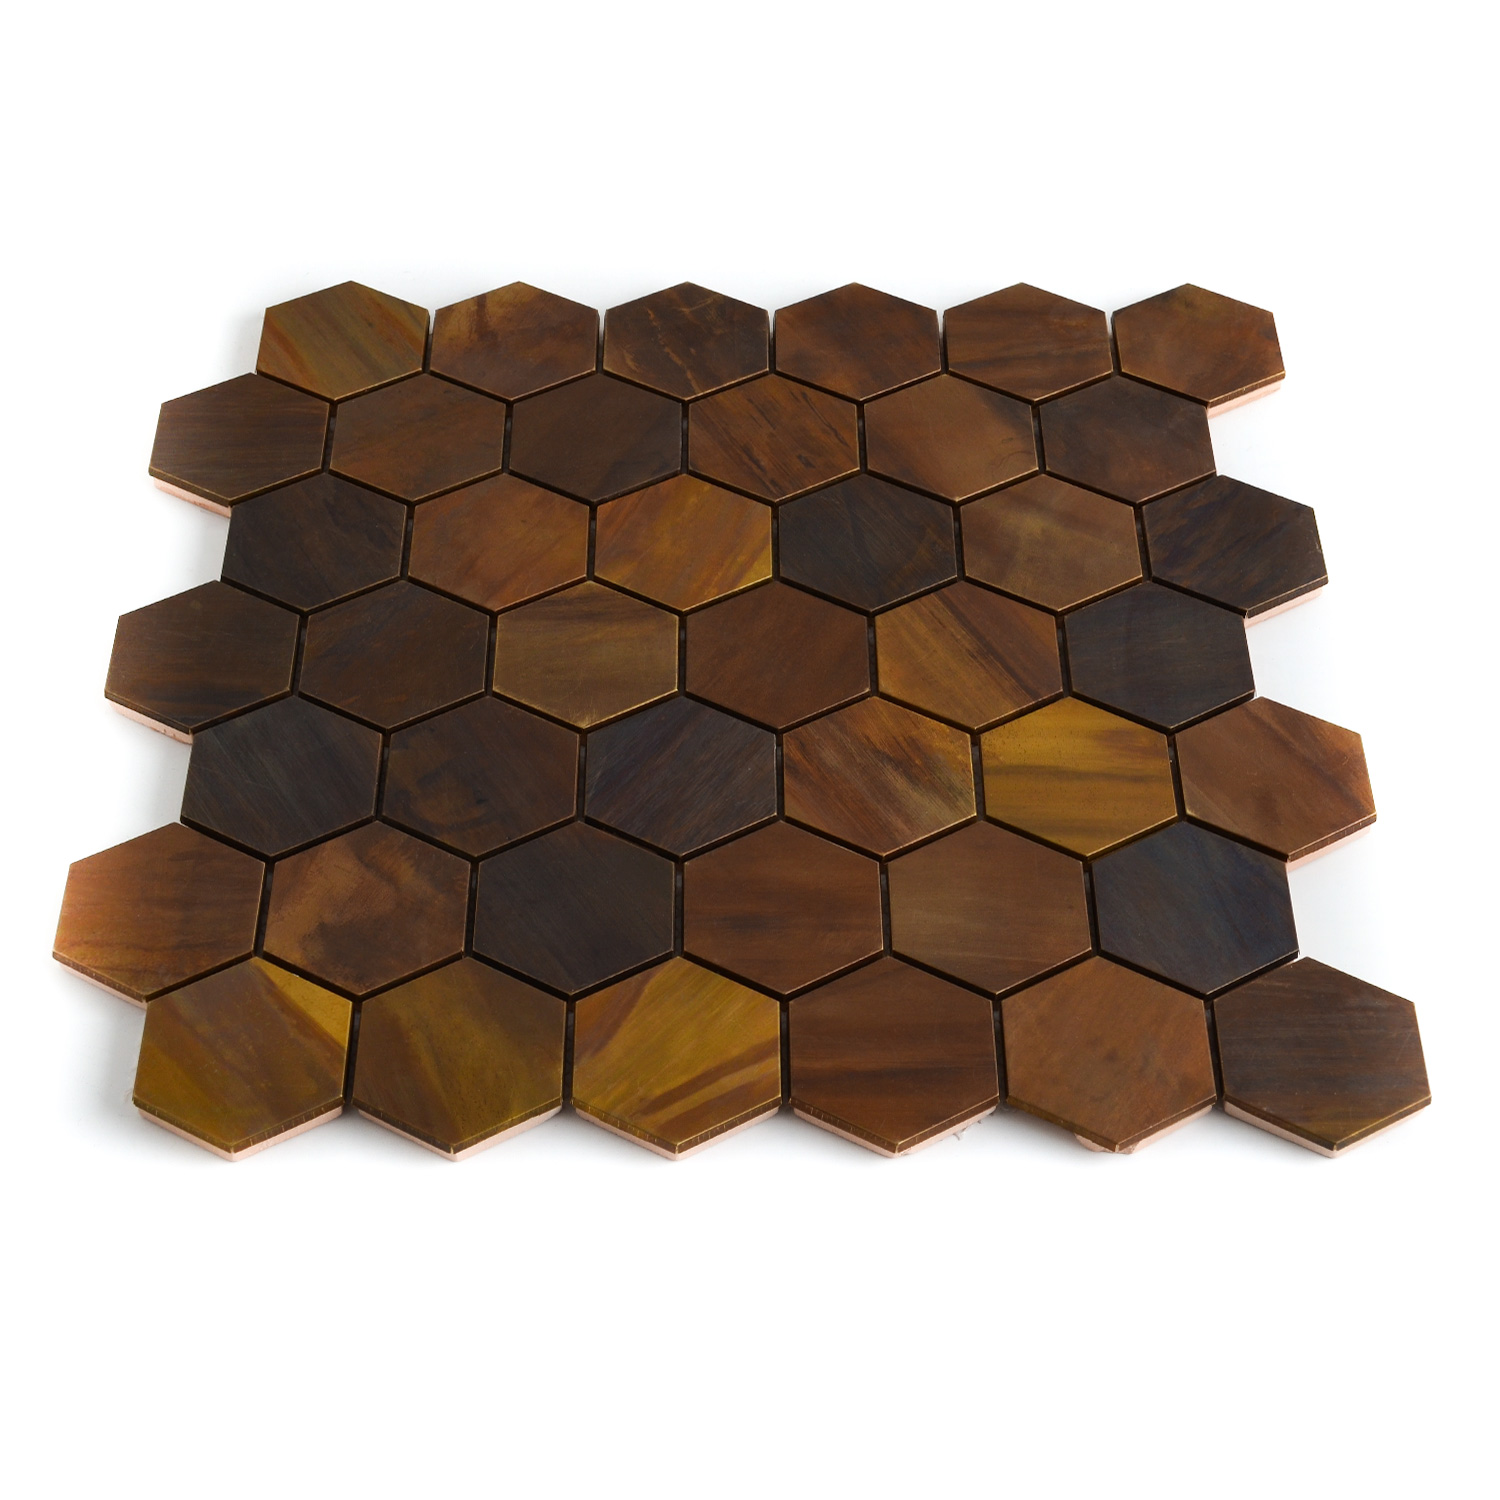 Hexagonmosaik Mosaikfliesen Kupfer 48 Mali Matte